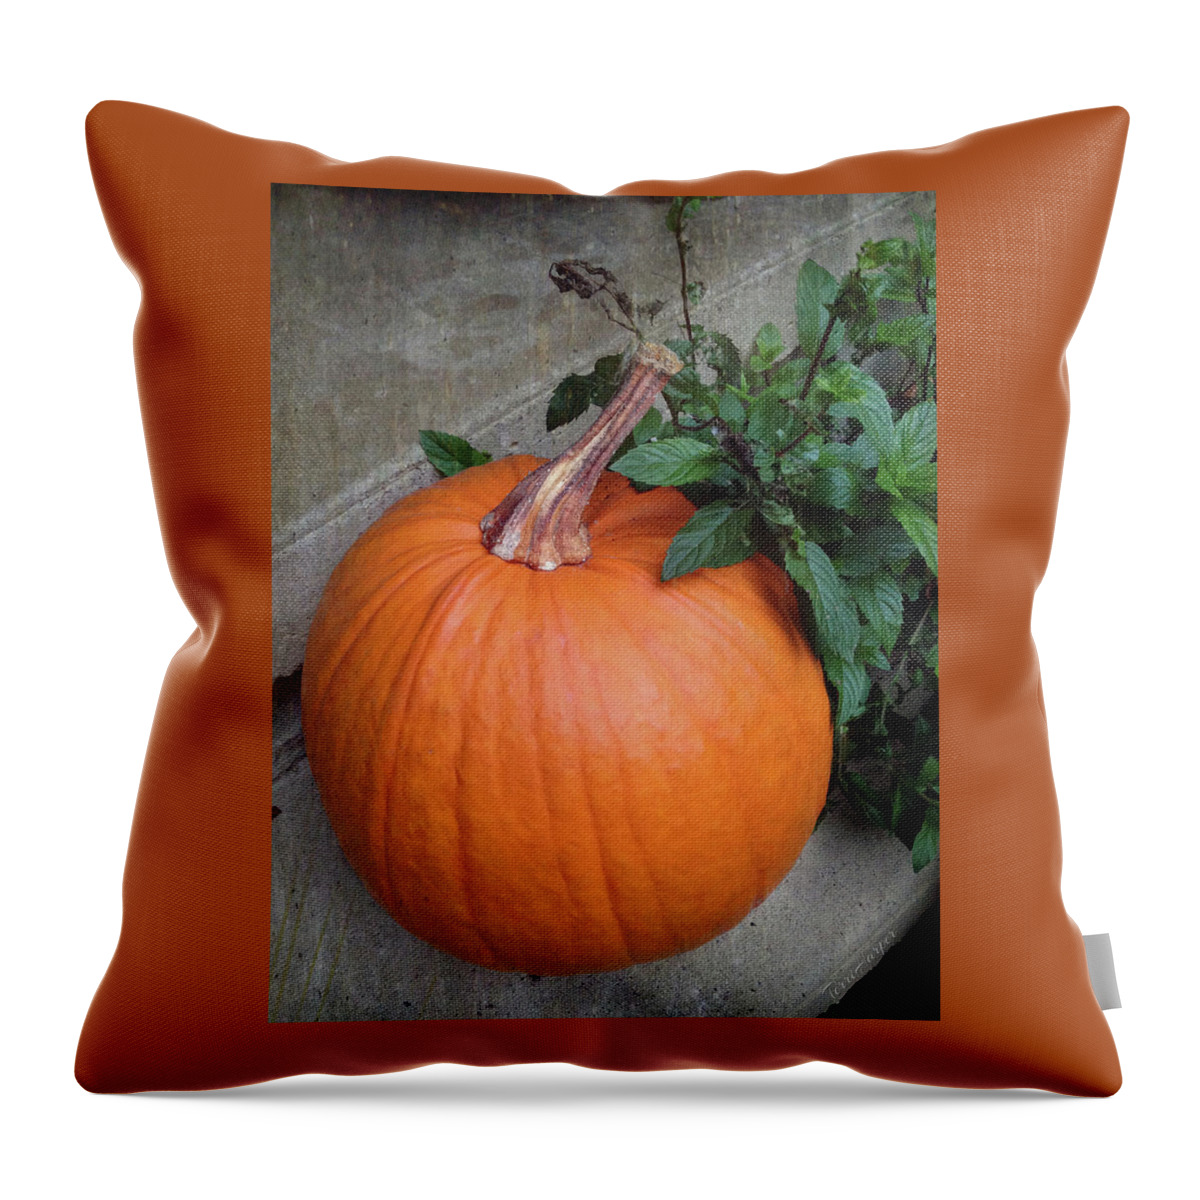 Pumpkin Throw Pillow featuring the photograph Pumpkin by Terri Harper